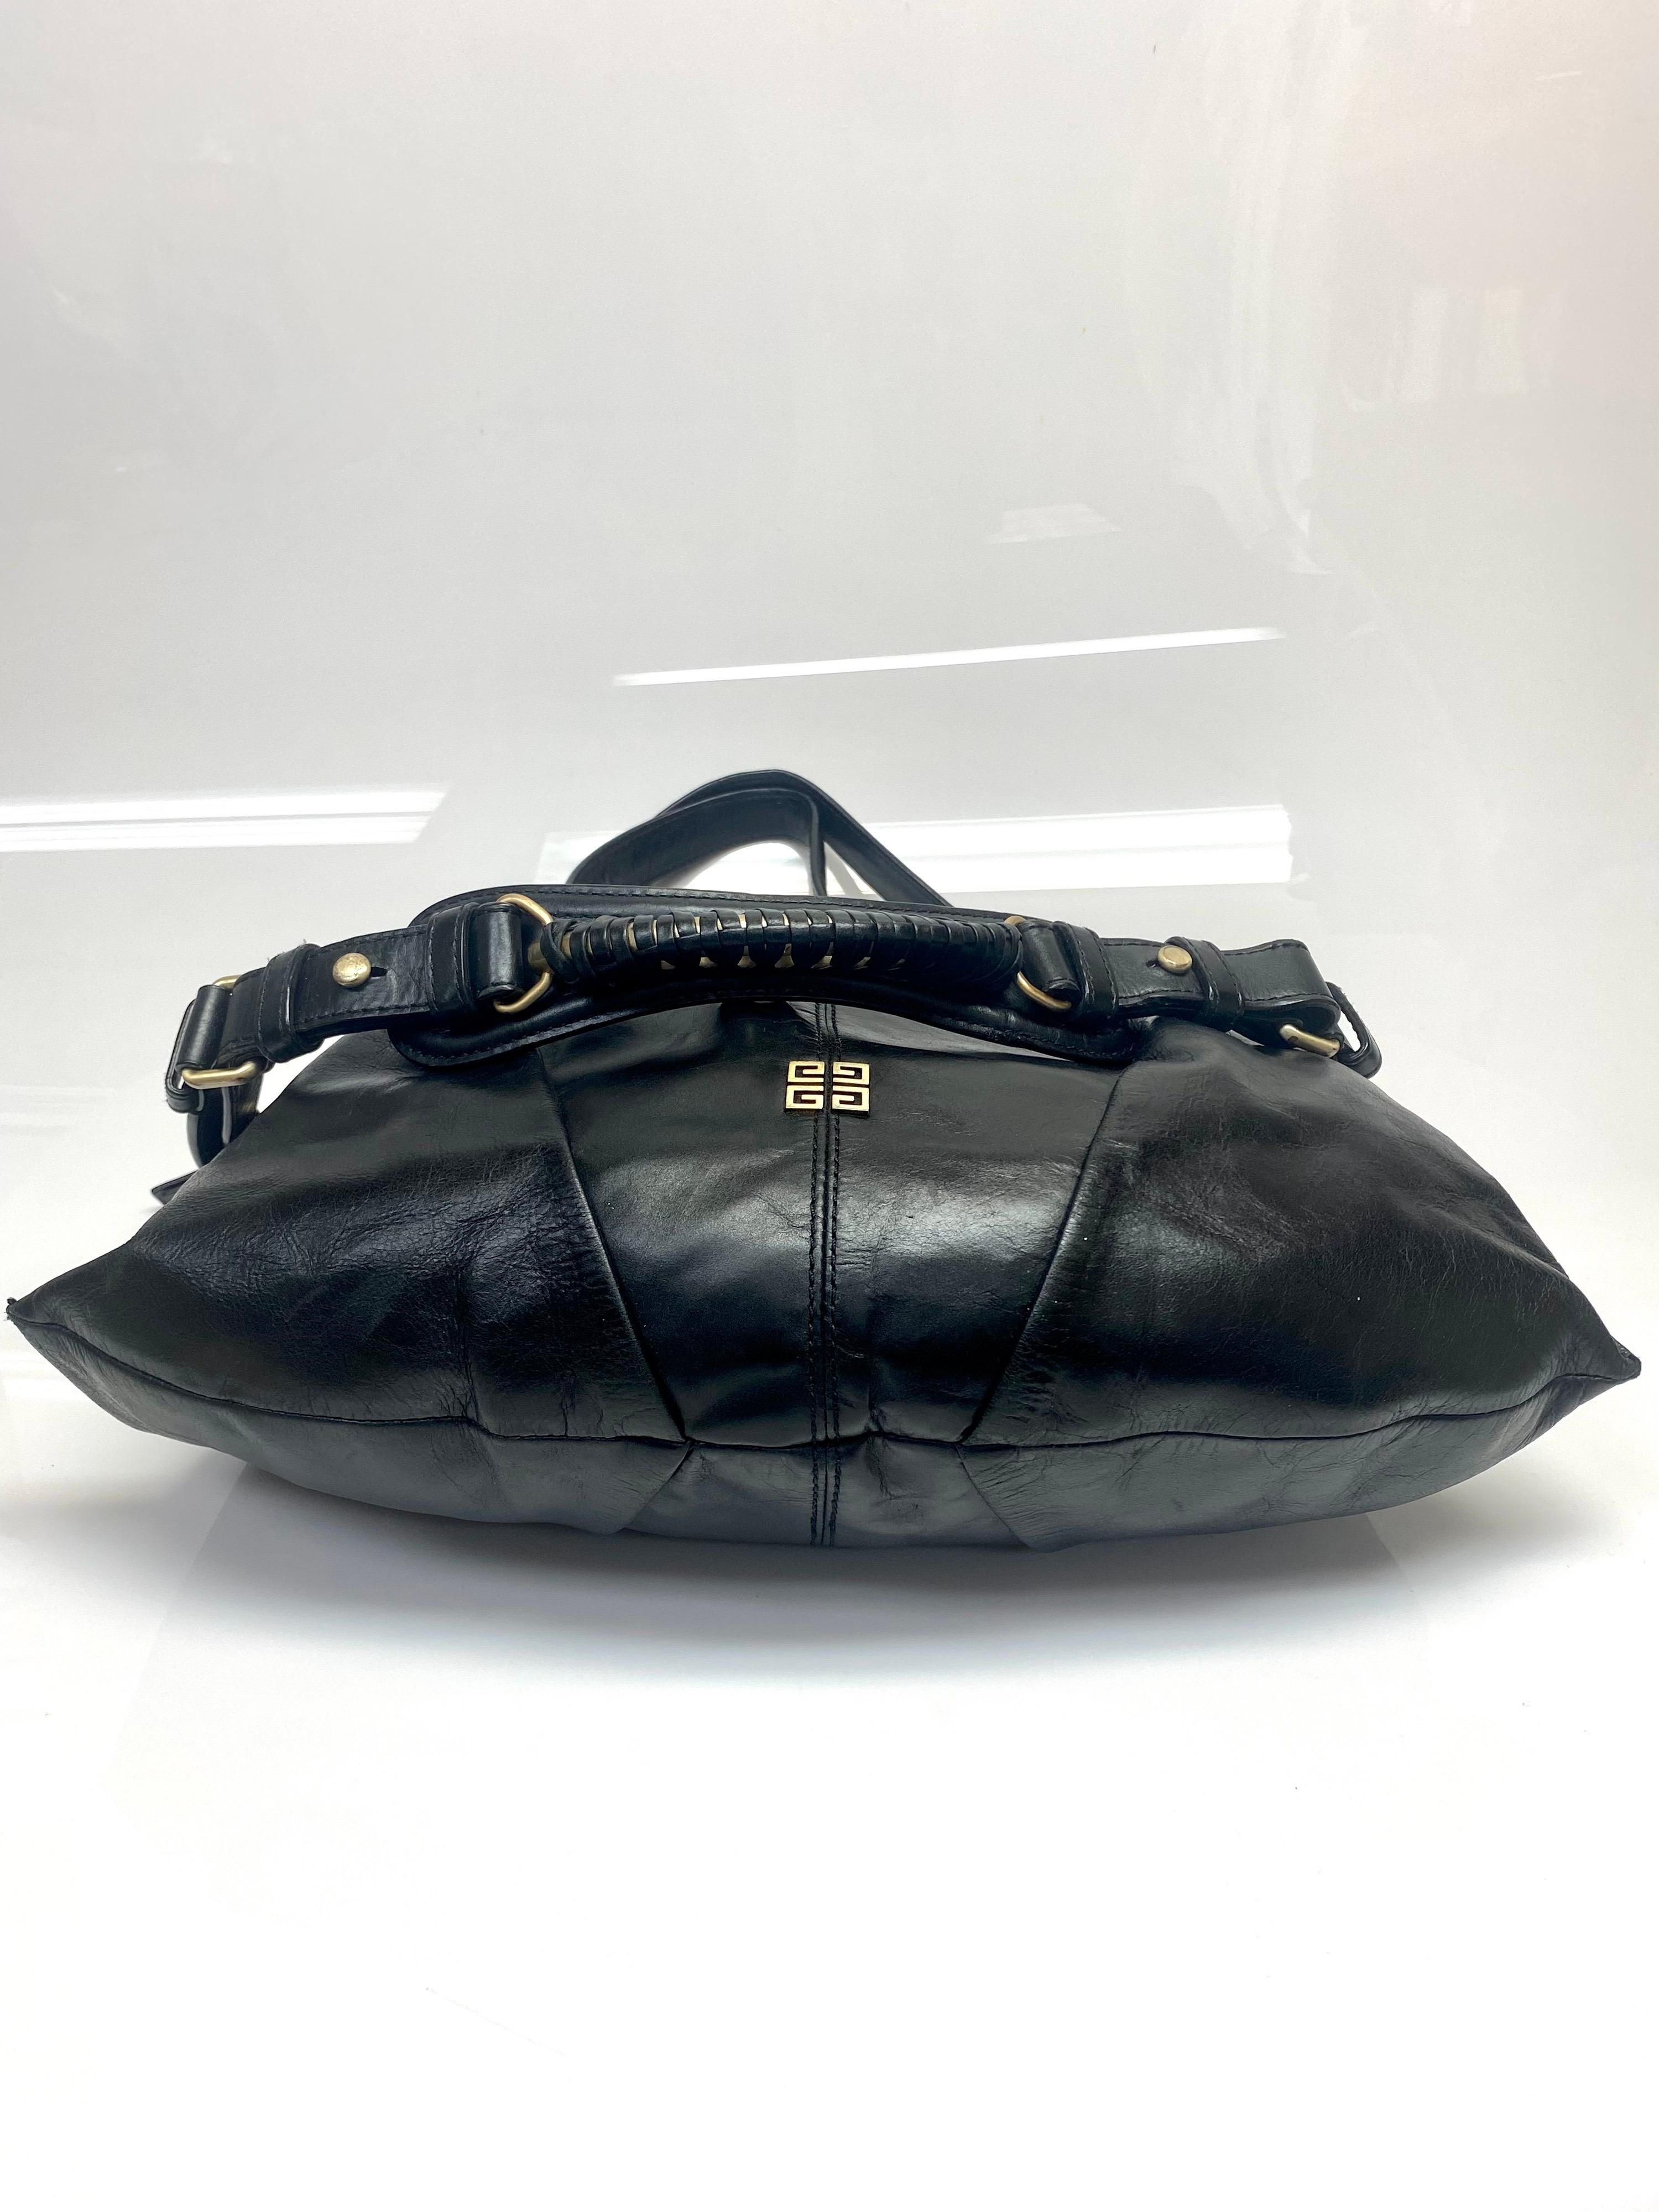 Givenchy Black Leather Shoulder Handbag-GHW For Sale 3